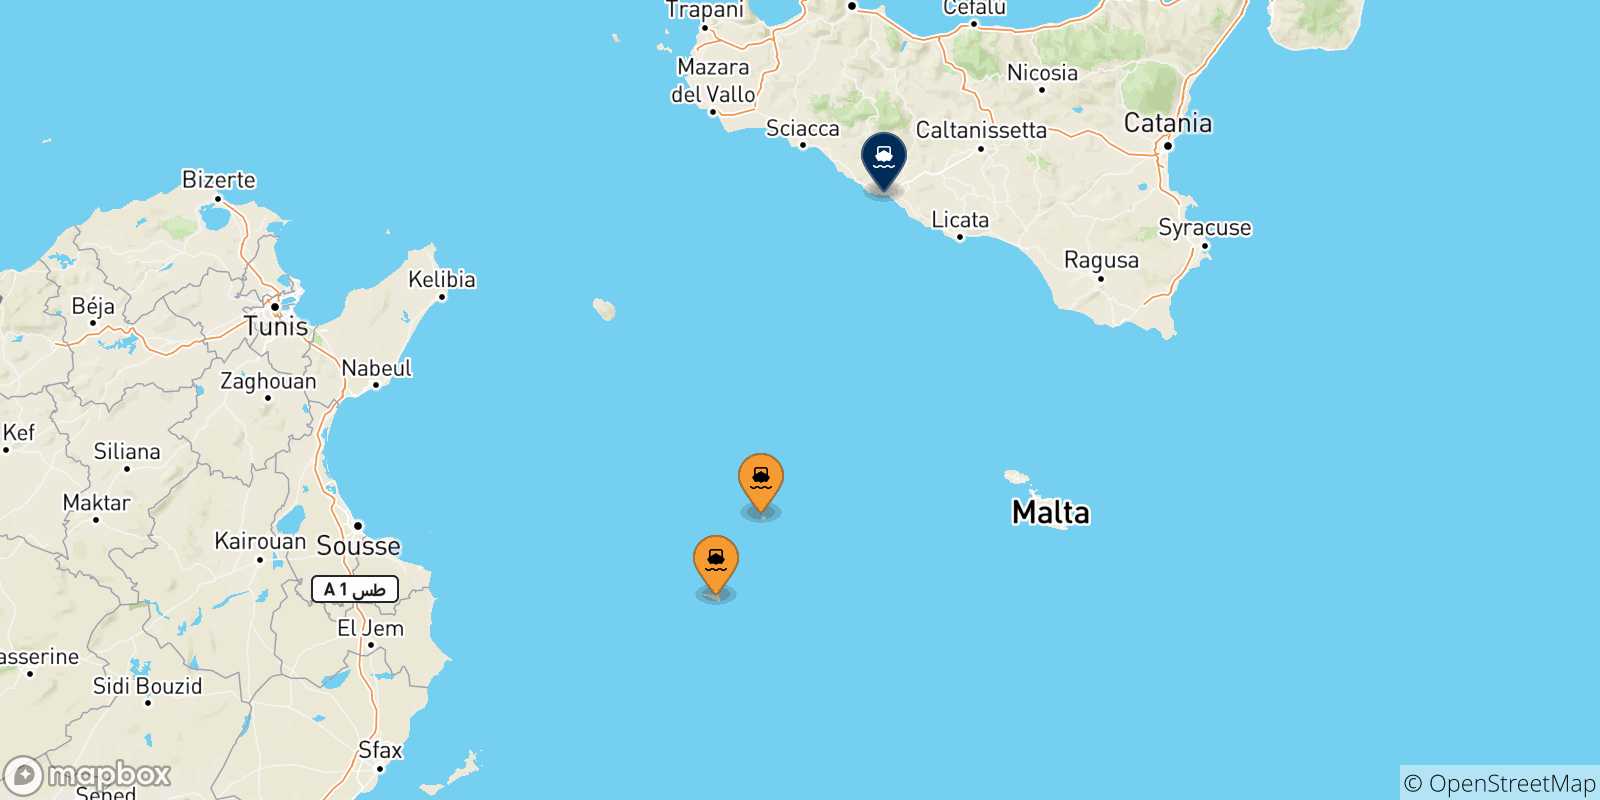 Mappa delle possibili rotte tra le Isole Pelagie e Porto Empedocle